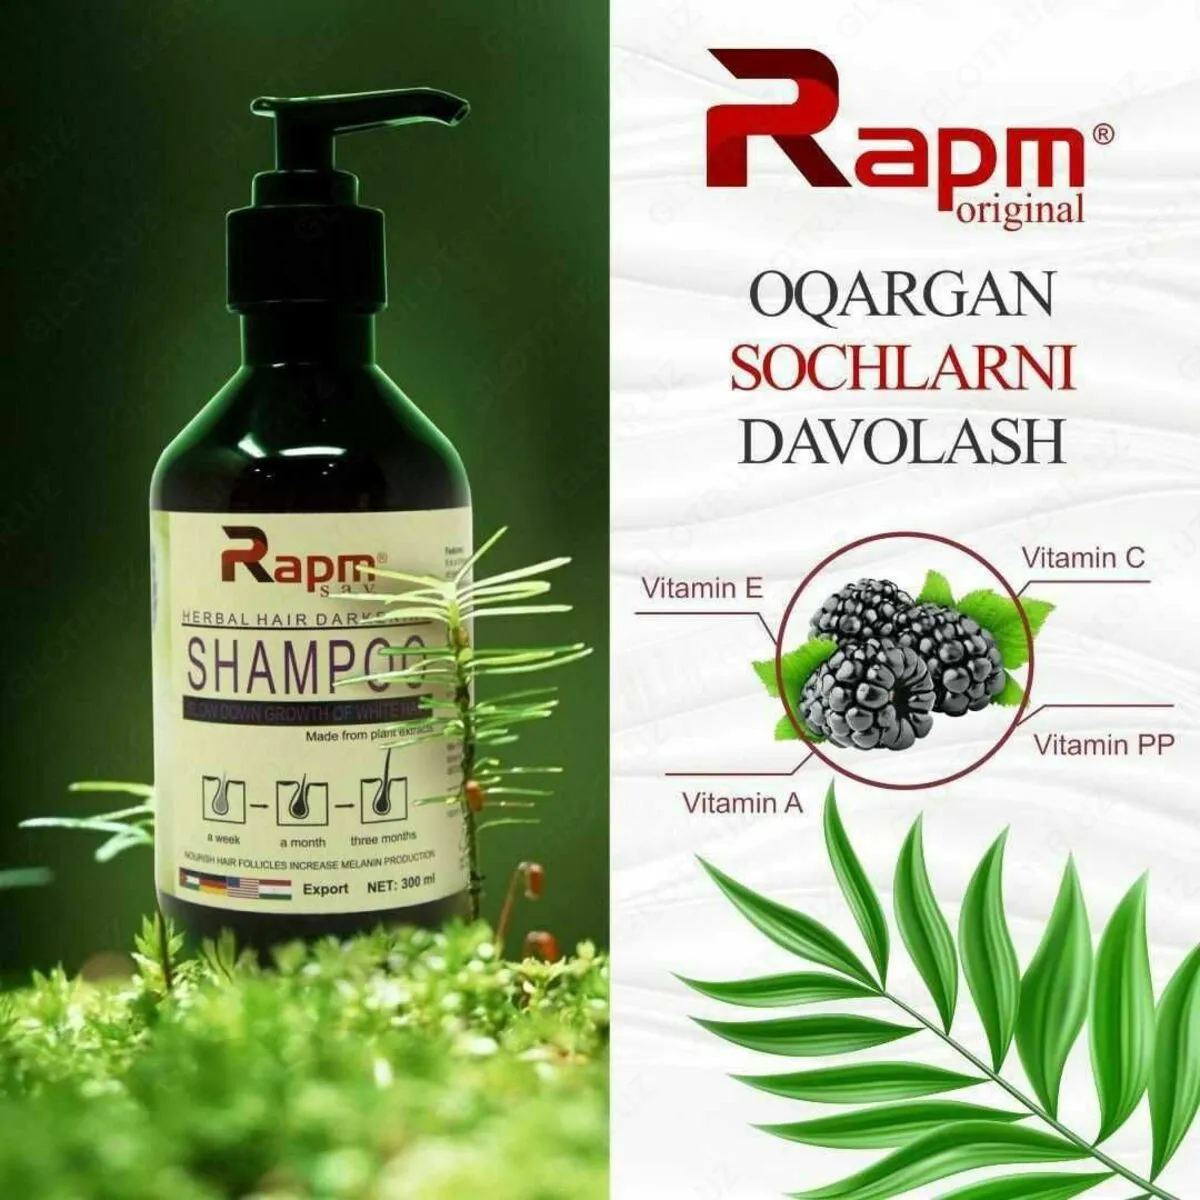 Soch ildizlarini qoraytiradigan shampun-uzum bilan Rapm#1